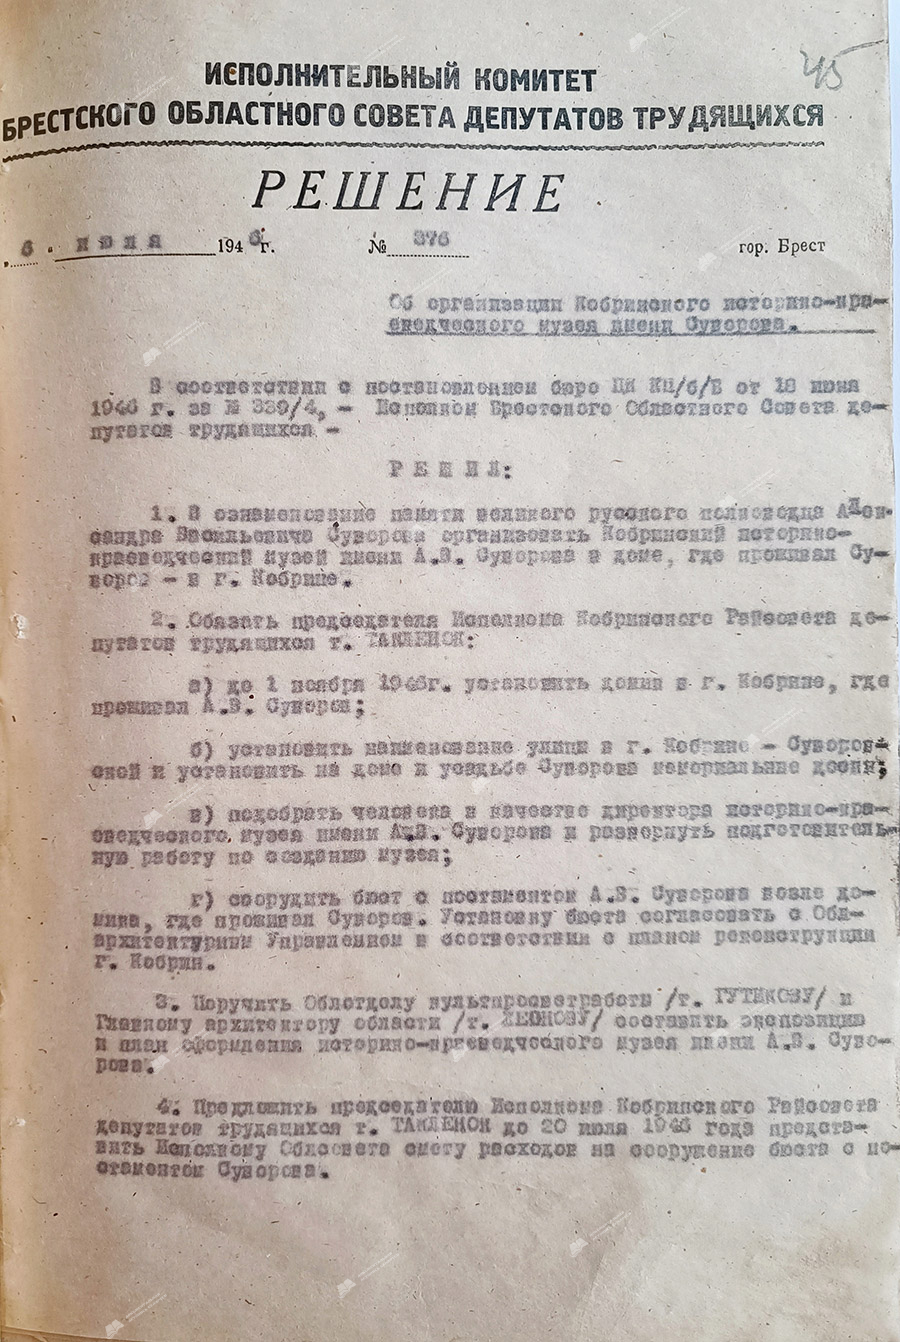 Beschluss Nr. 376 des Exekutivkomitees des Brester Regionalrats der Arbeiterdeputierten «Über die Organisation des nach Suworow benannten Kobryn-Museums für Geschichte und Lokalgeschichte»-с. 0